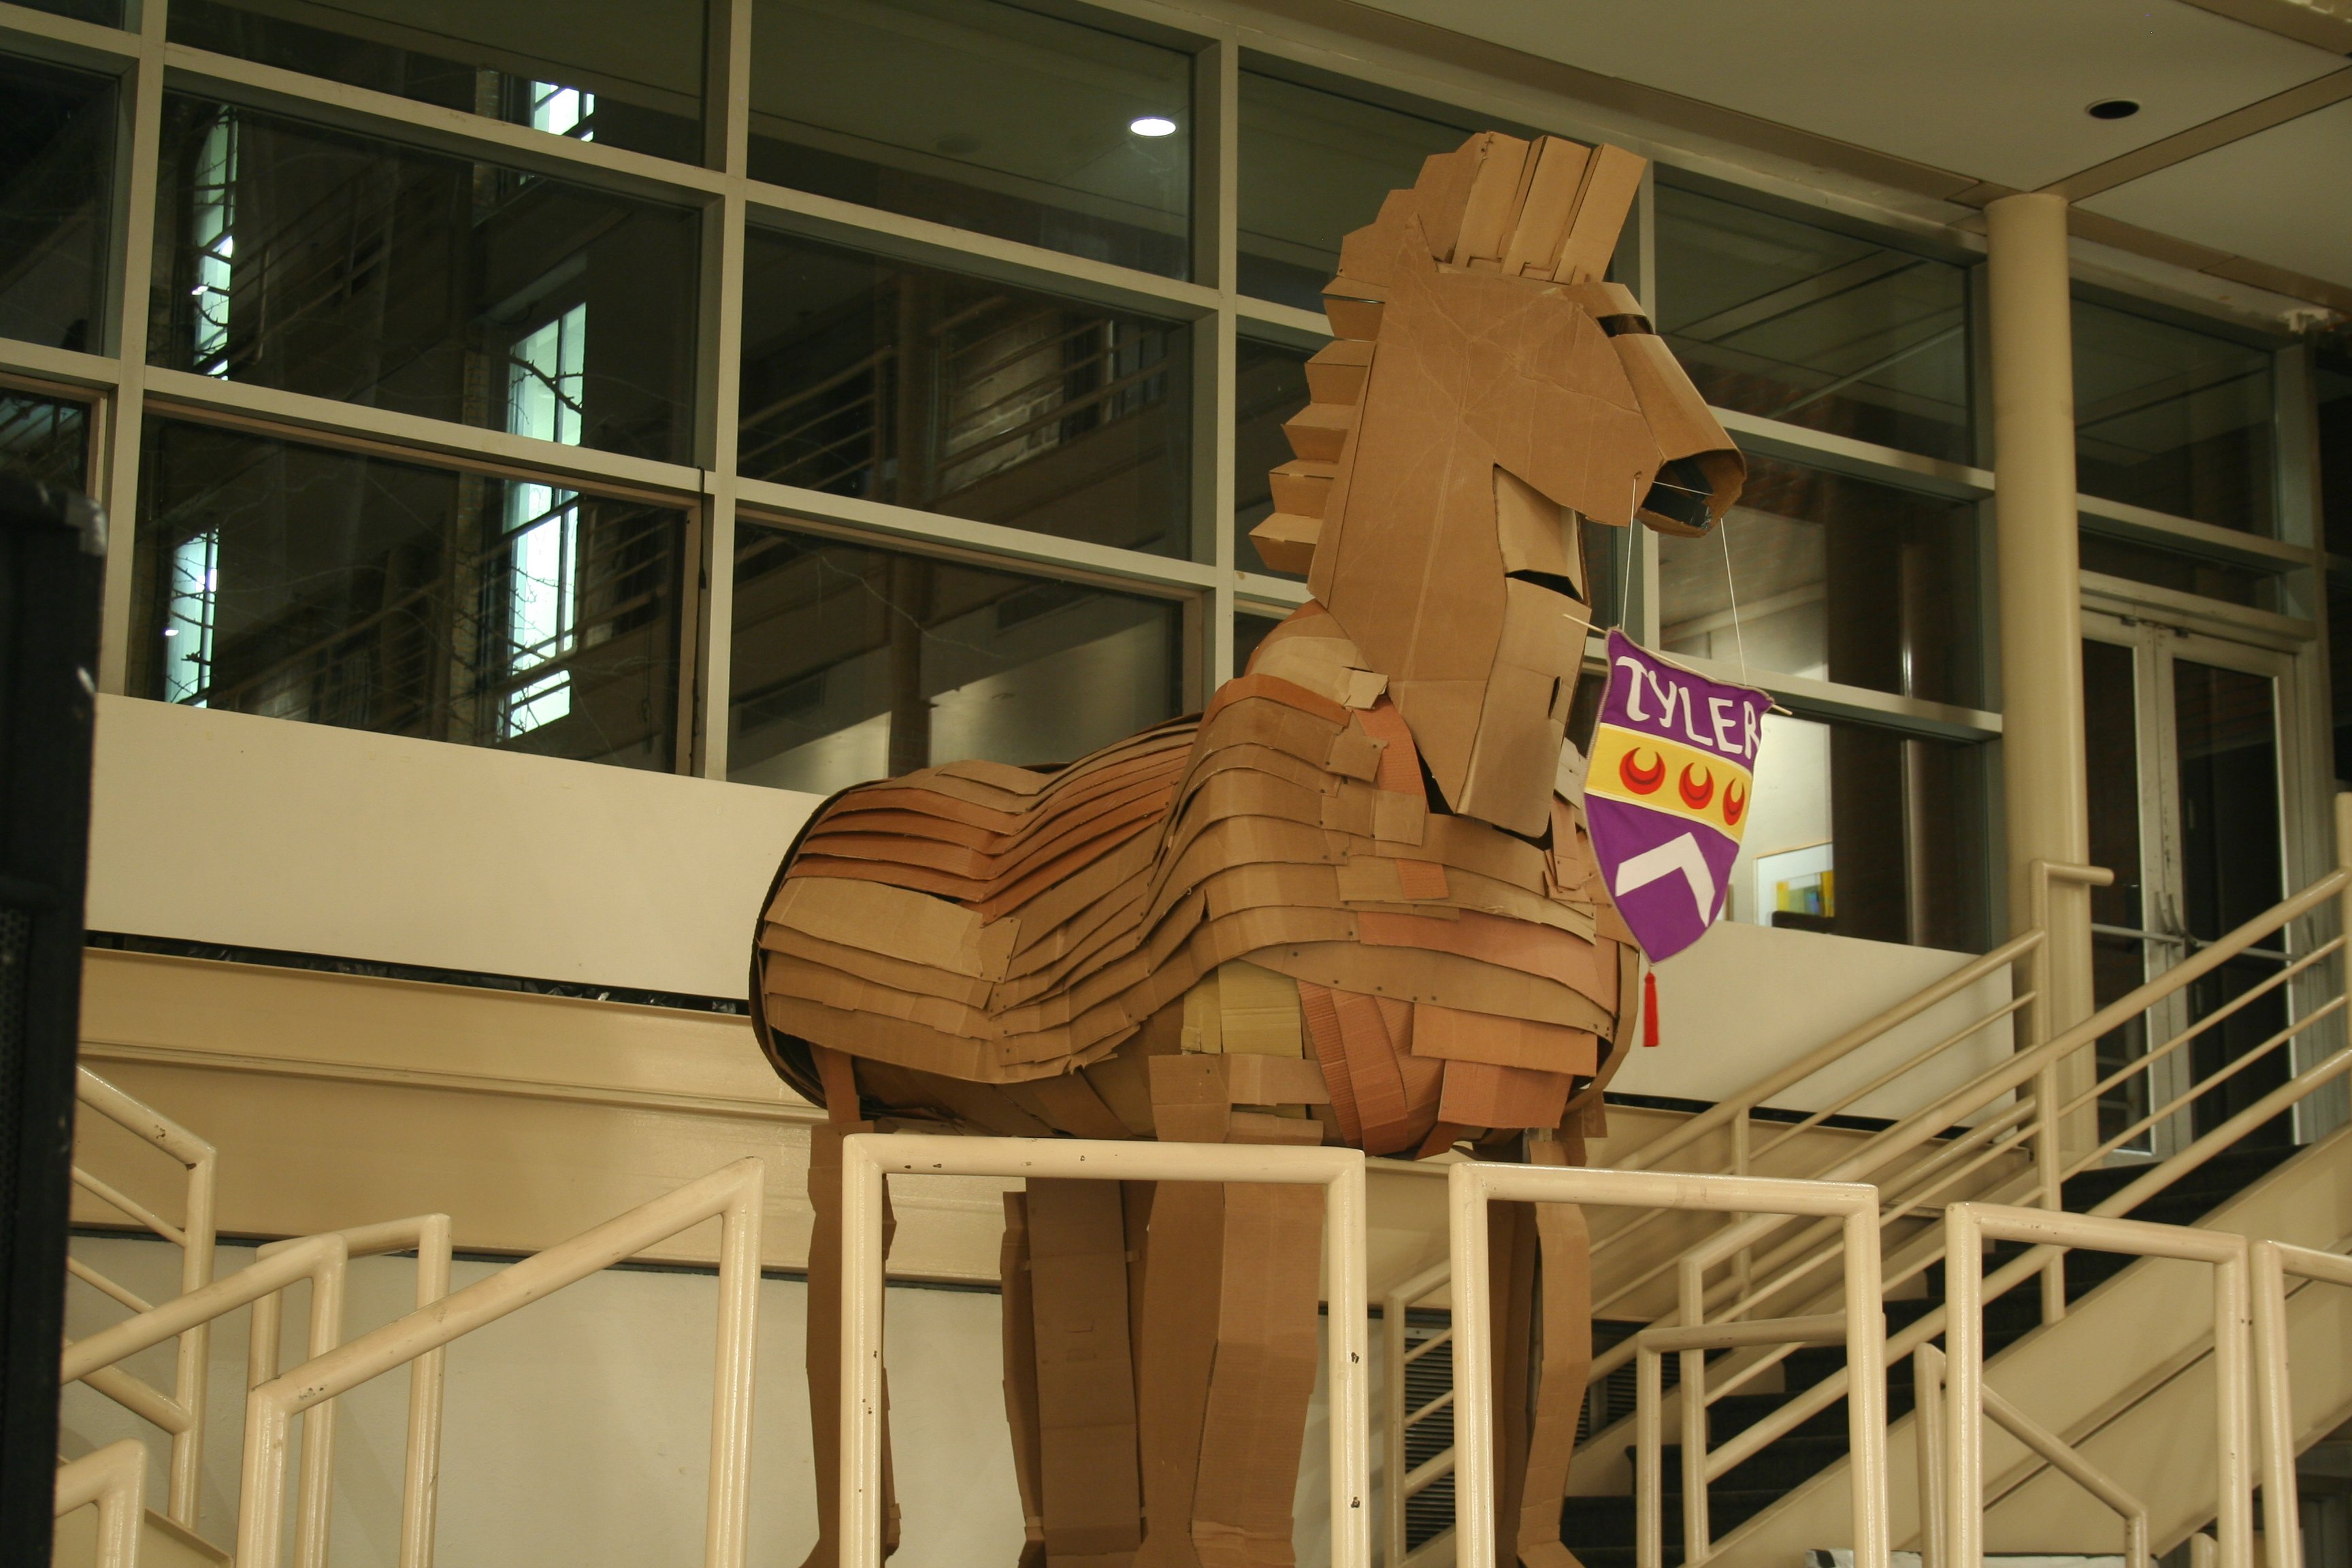 Trojan Horse at Uarts